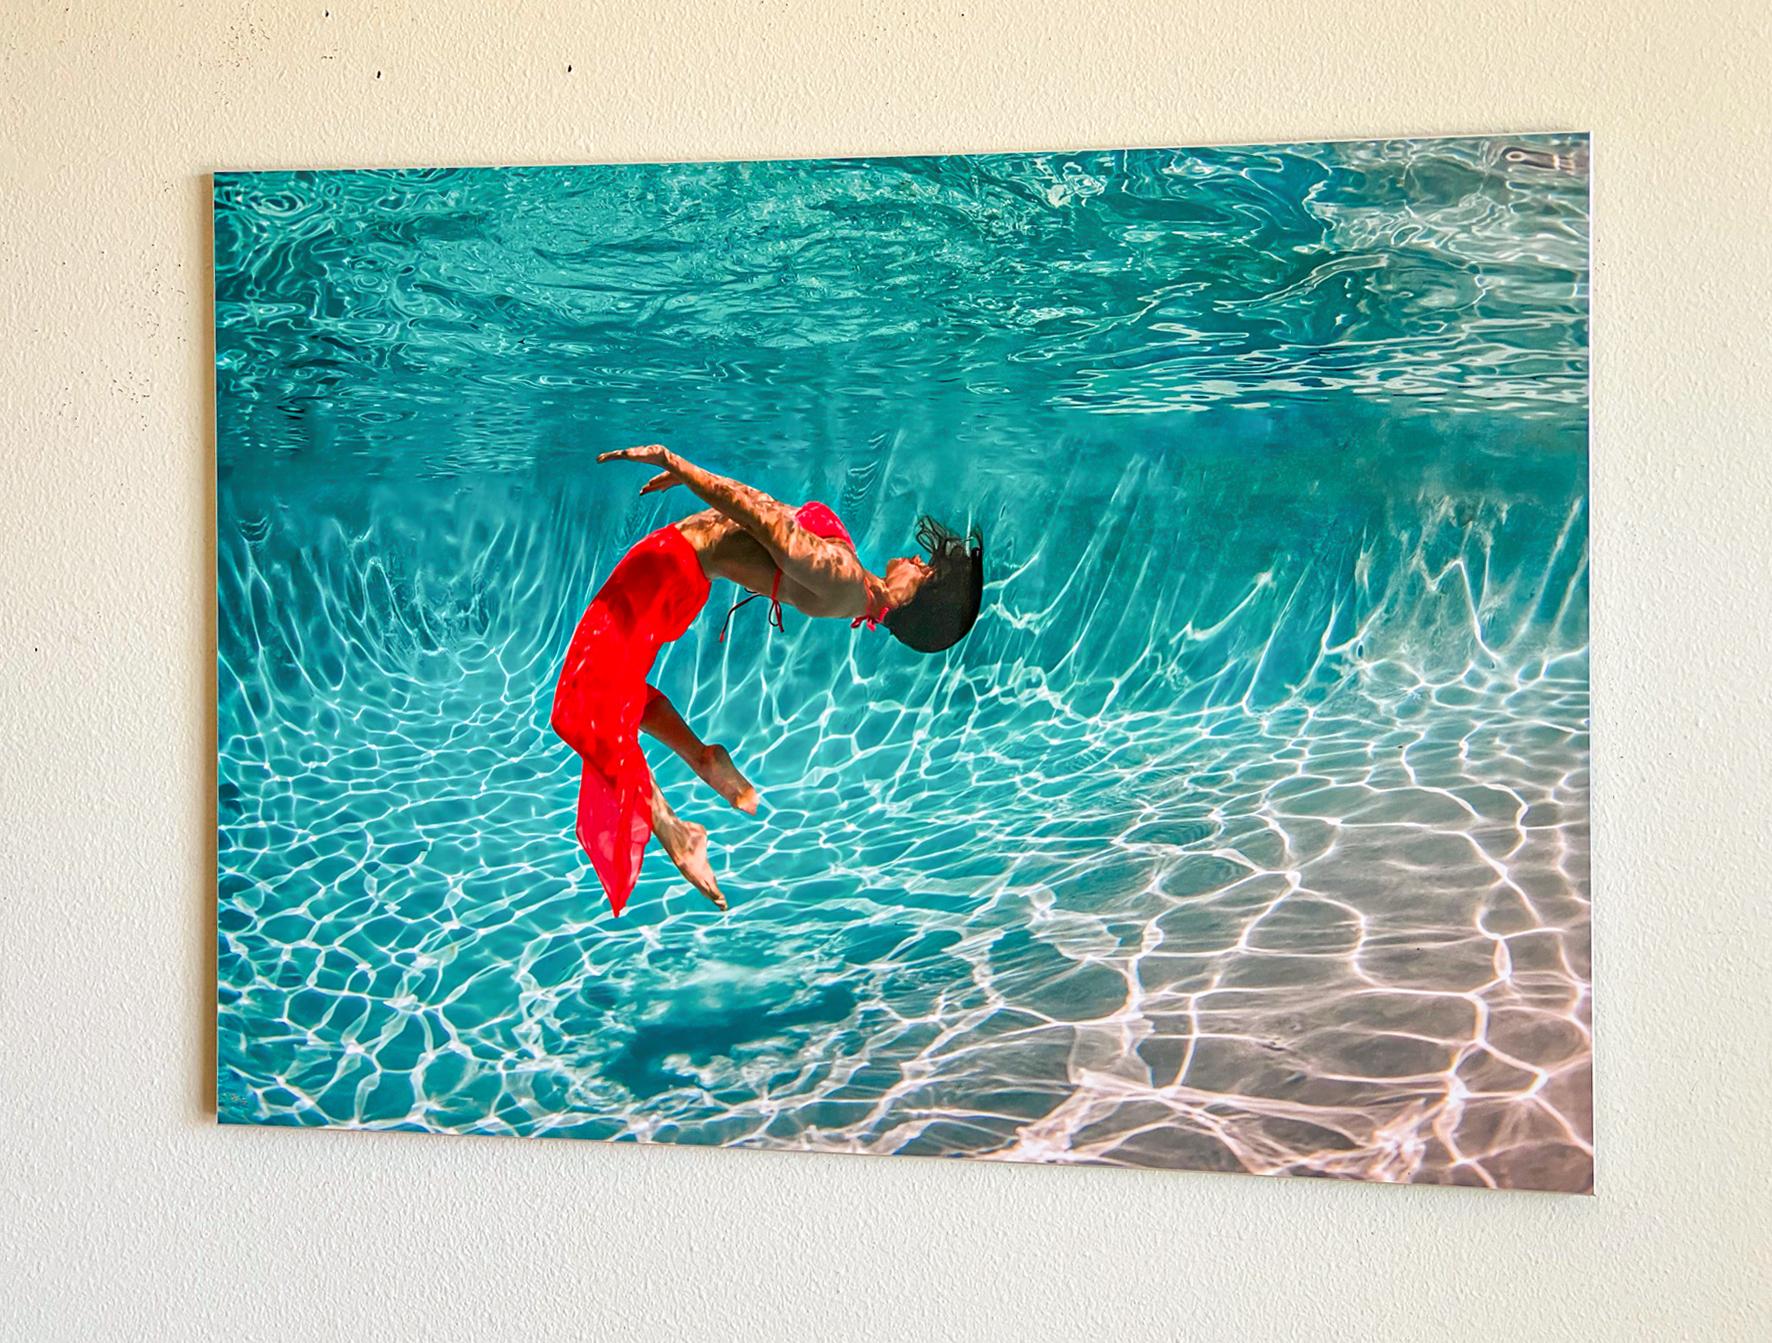 Unterwasserfoto einer jungen Frau in rotem Kleid, die in einem Pool unter Wasser tanzt. Ein sehr helles Foto mit viel Sonne und Positivität.

Modell: die russische Tänzerin Olga Sokolova.  Sehen Sie sich ihren Auftritt 